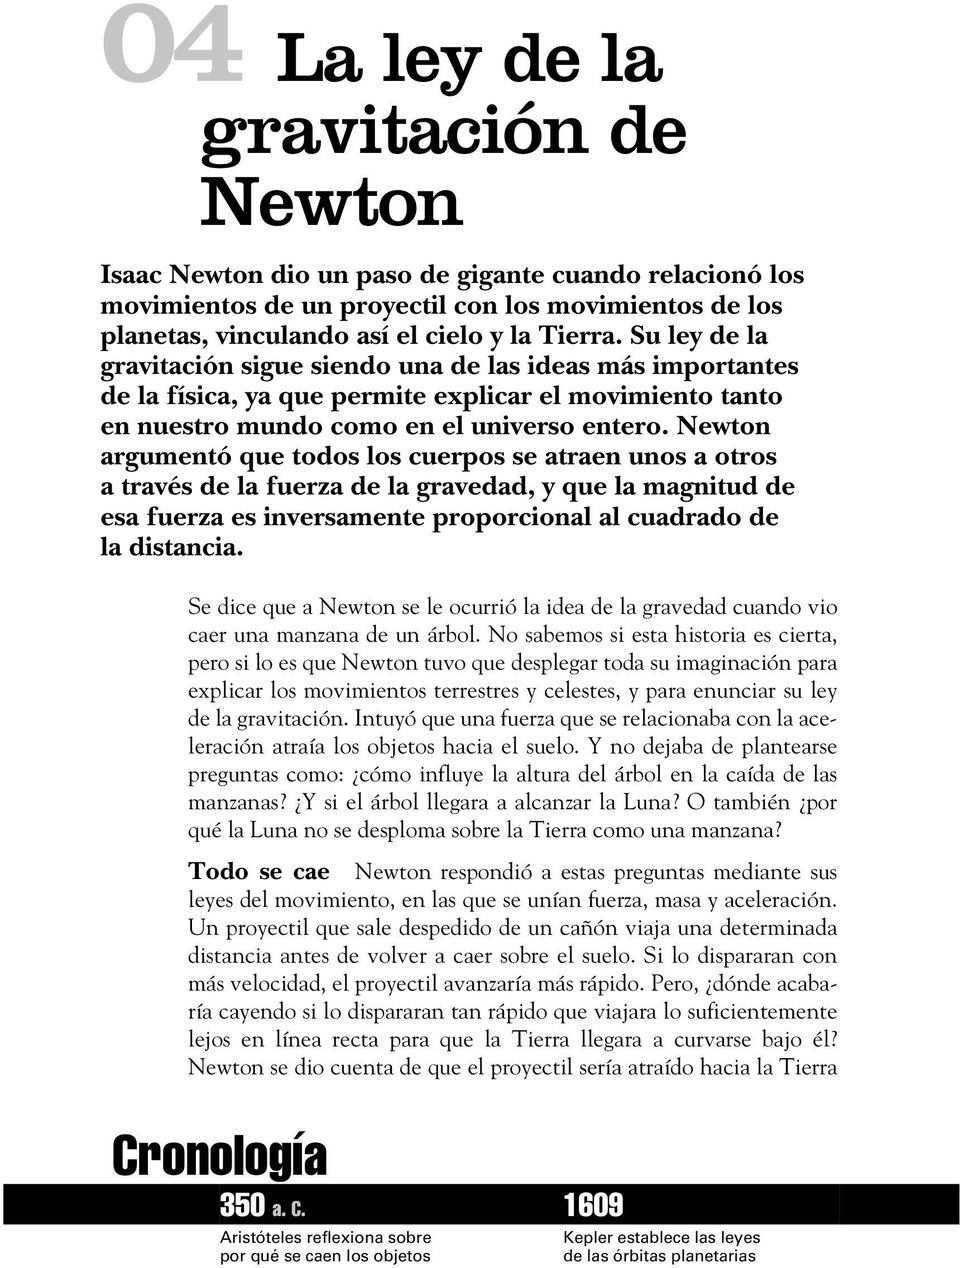 Newton argumentó que todos los cuerpos se atraen unos a otros a través de la fuerza de la gravedad, y que la magnitud de esa fuerza es inversamente proporcional al cuadrado de la distancia.